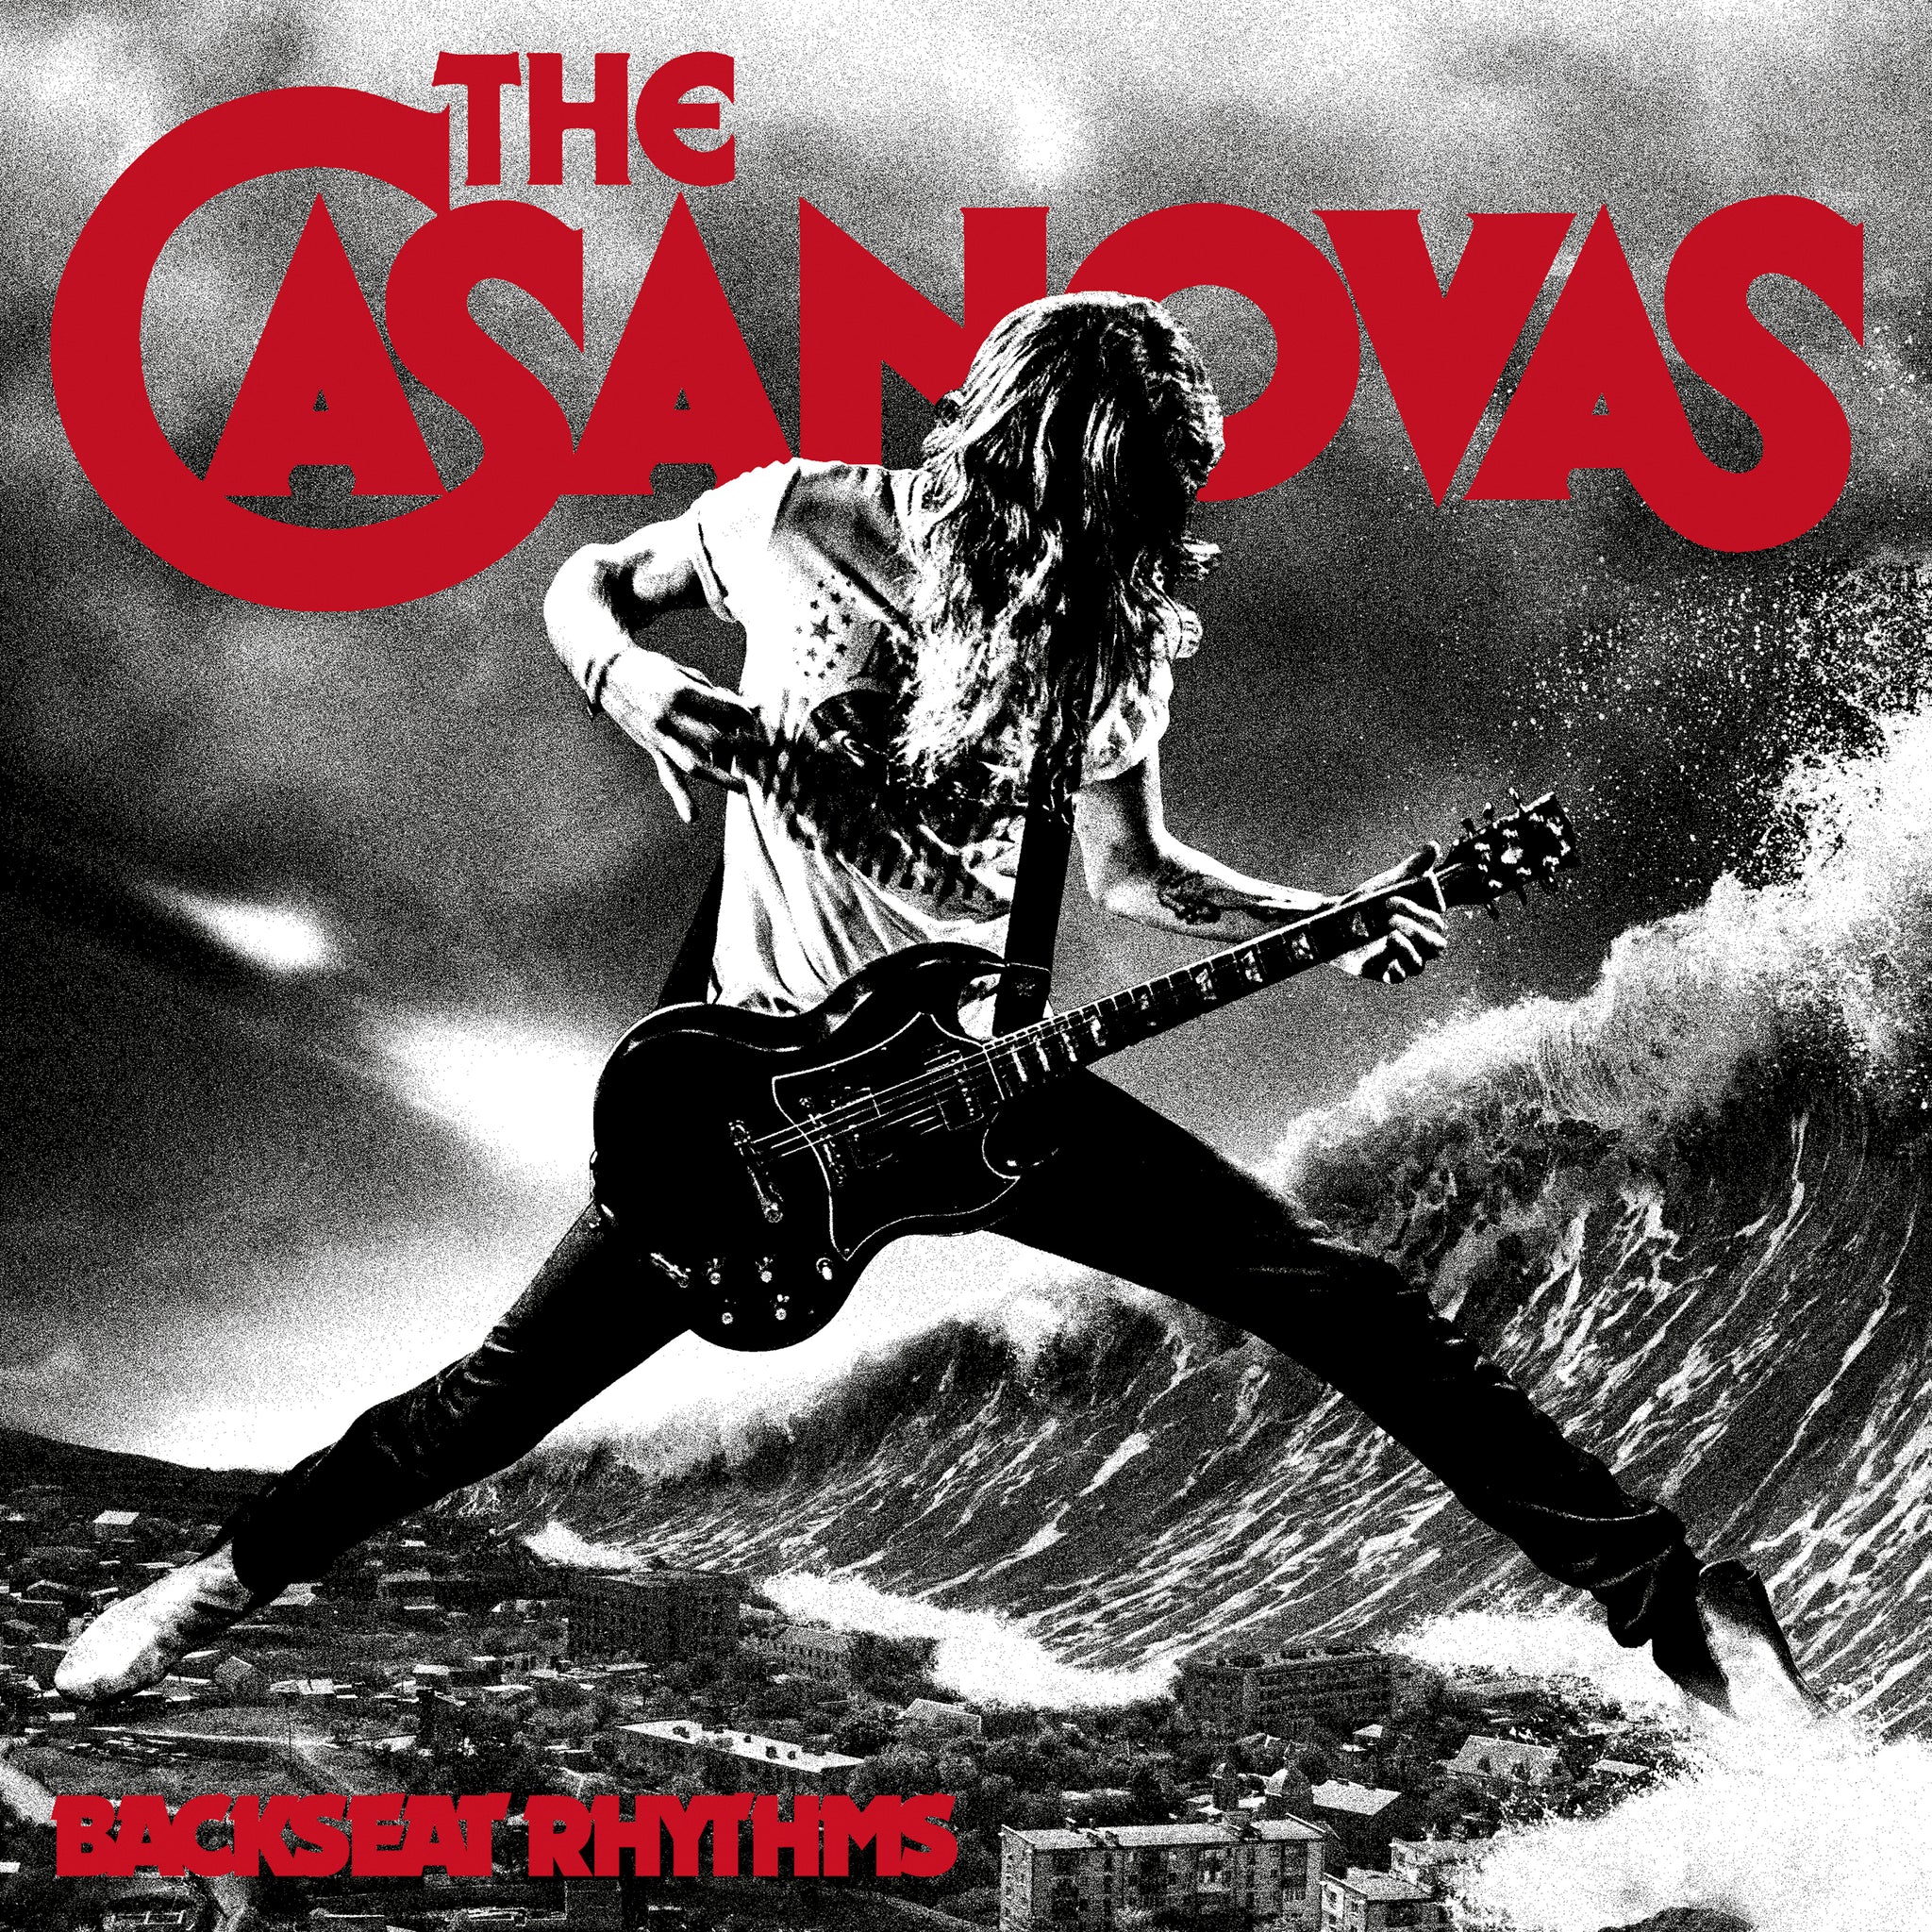 The Casanovas - Backseat Rhythms (CD)